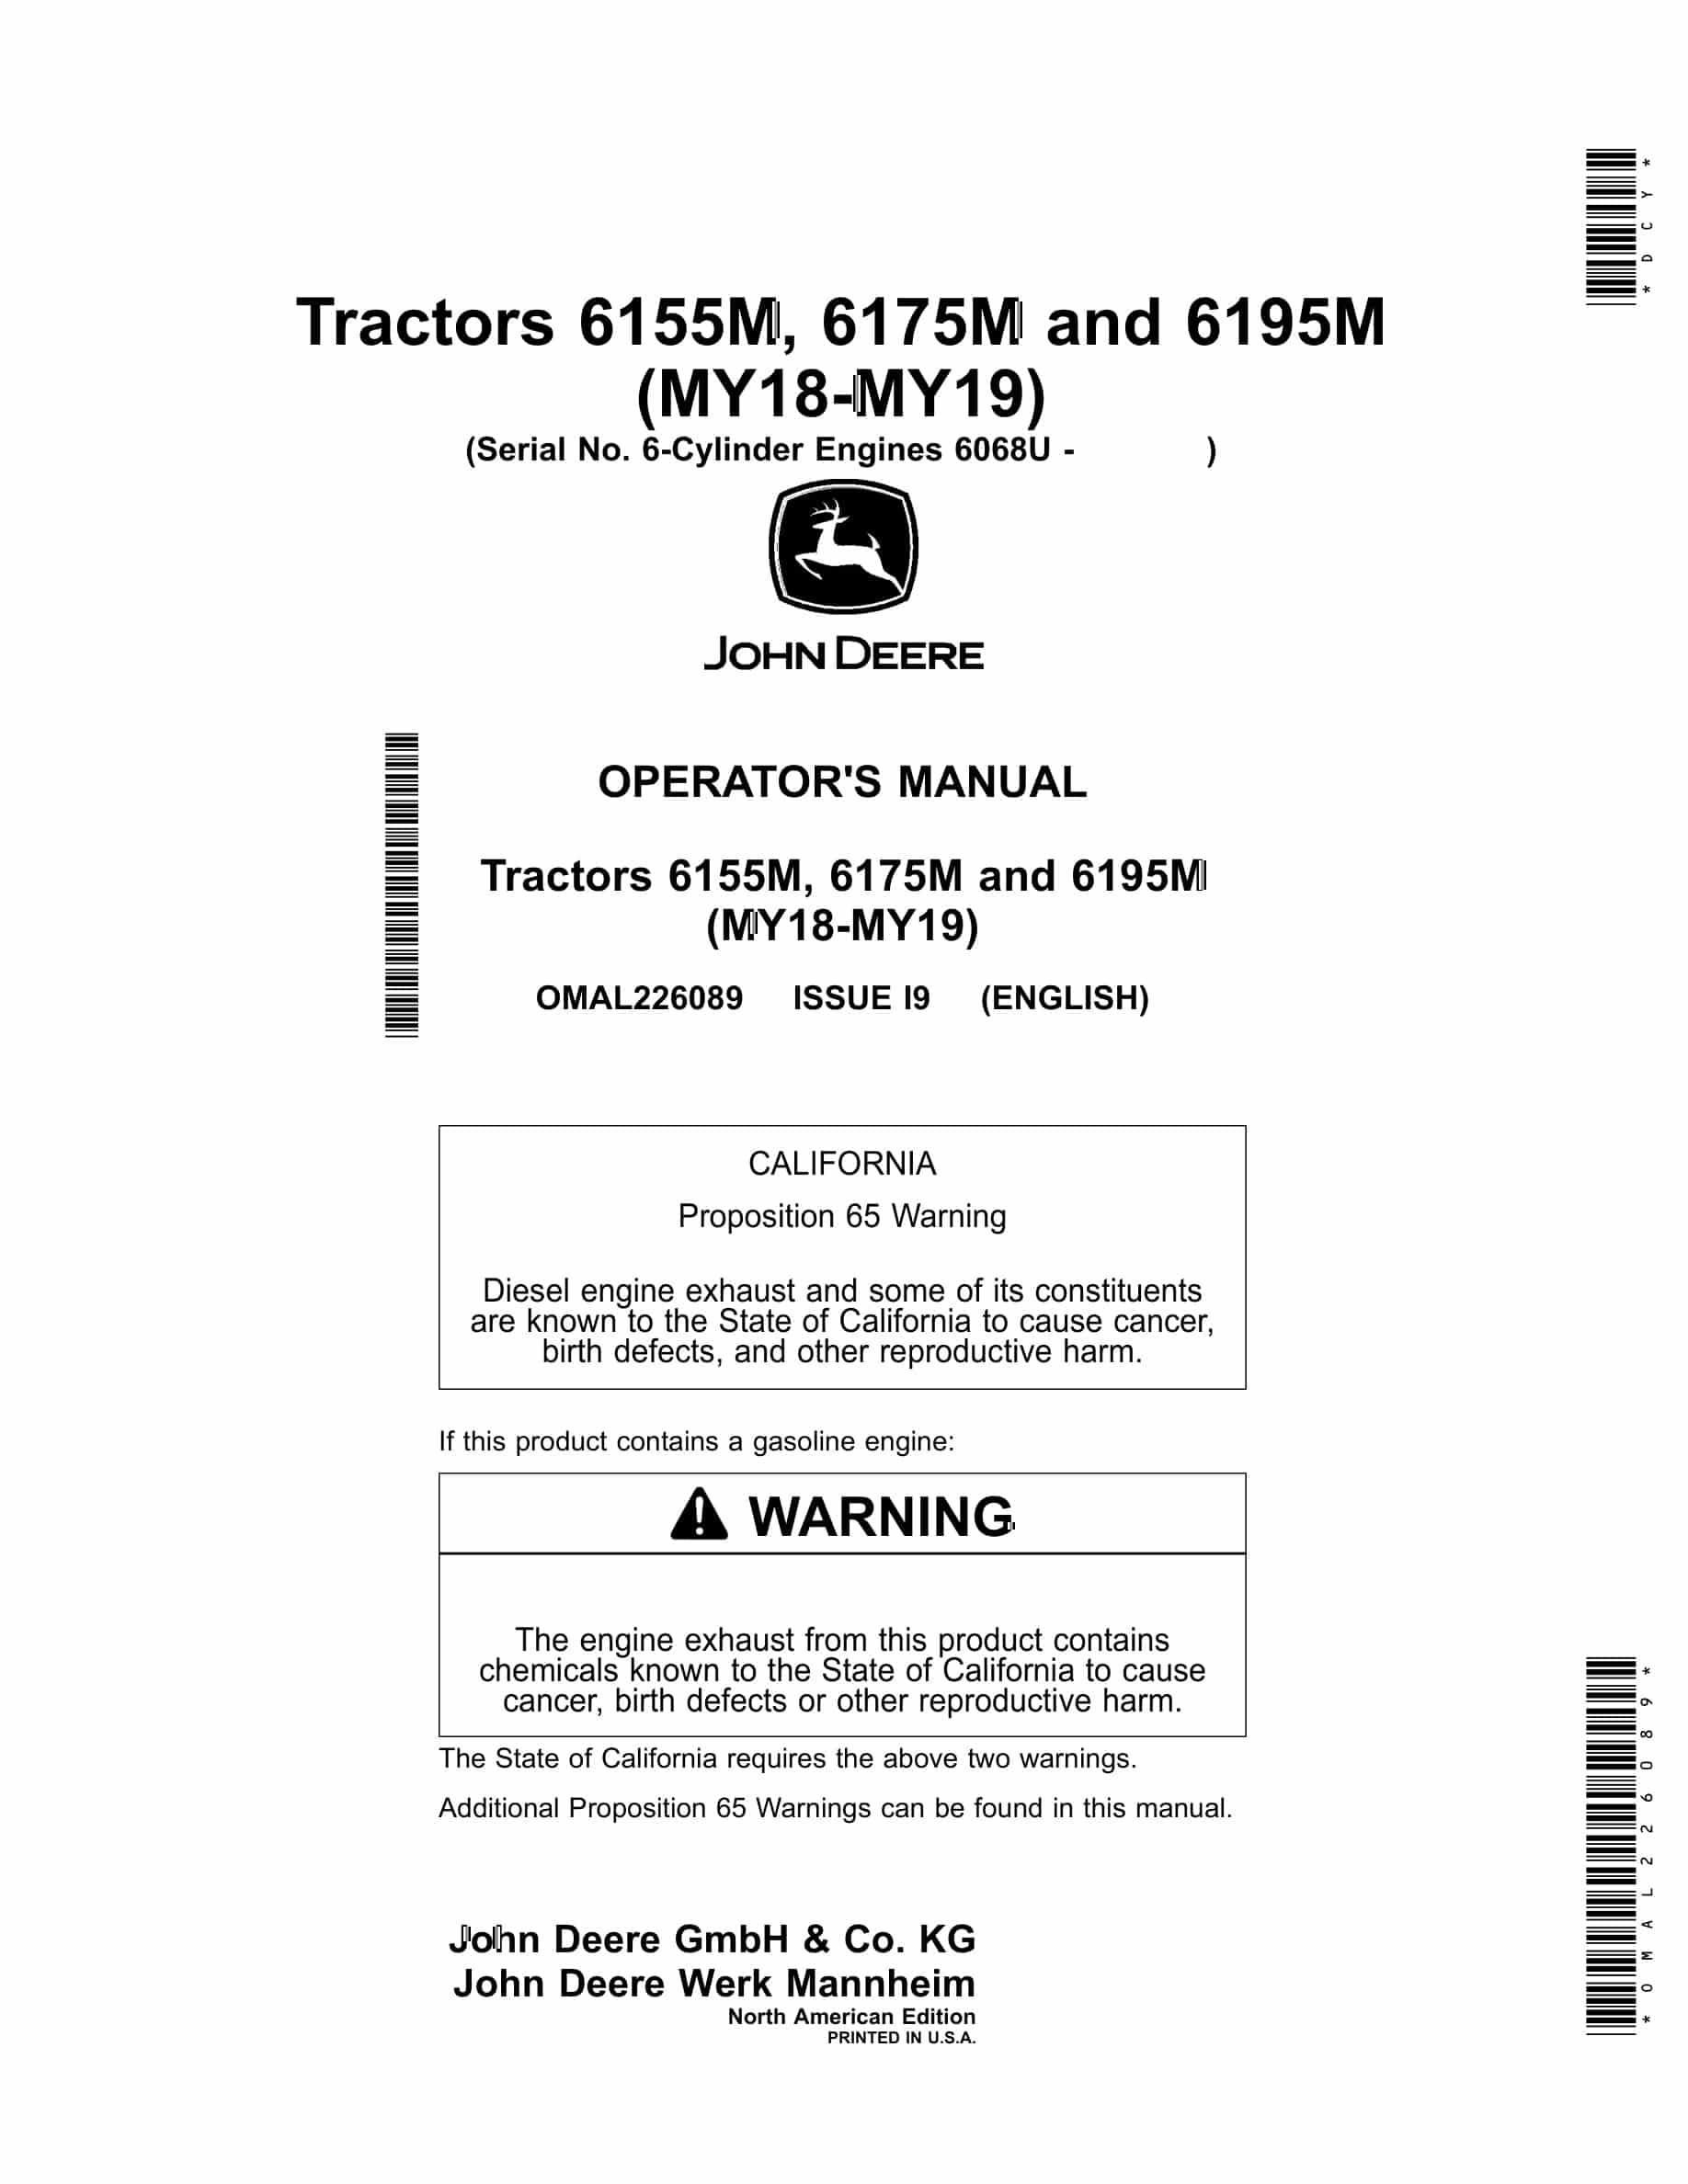 John Deere 6155M, 6175M and 6195M Tractor Operator Manual OMAL226089-1